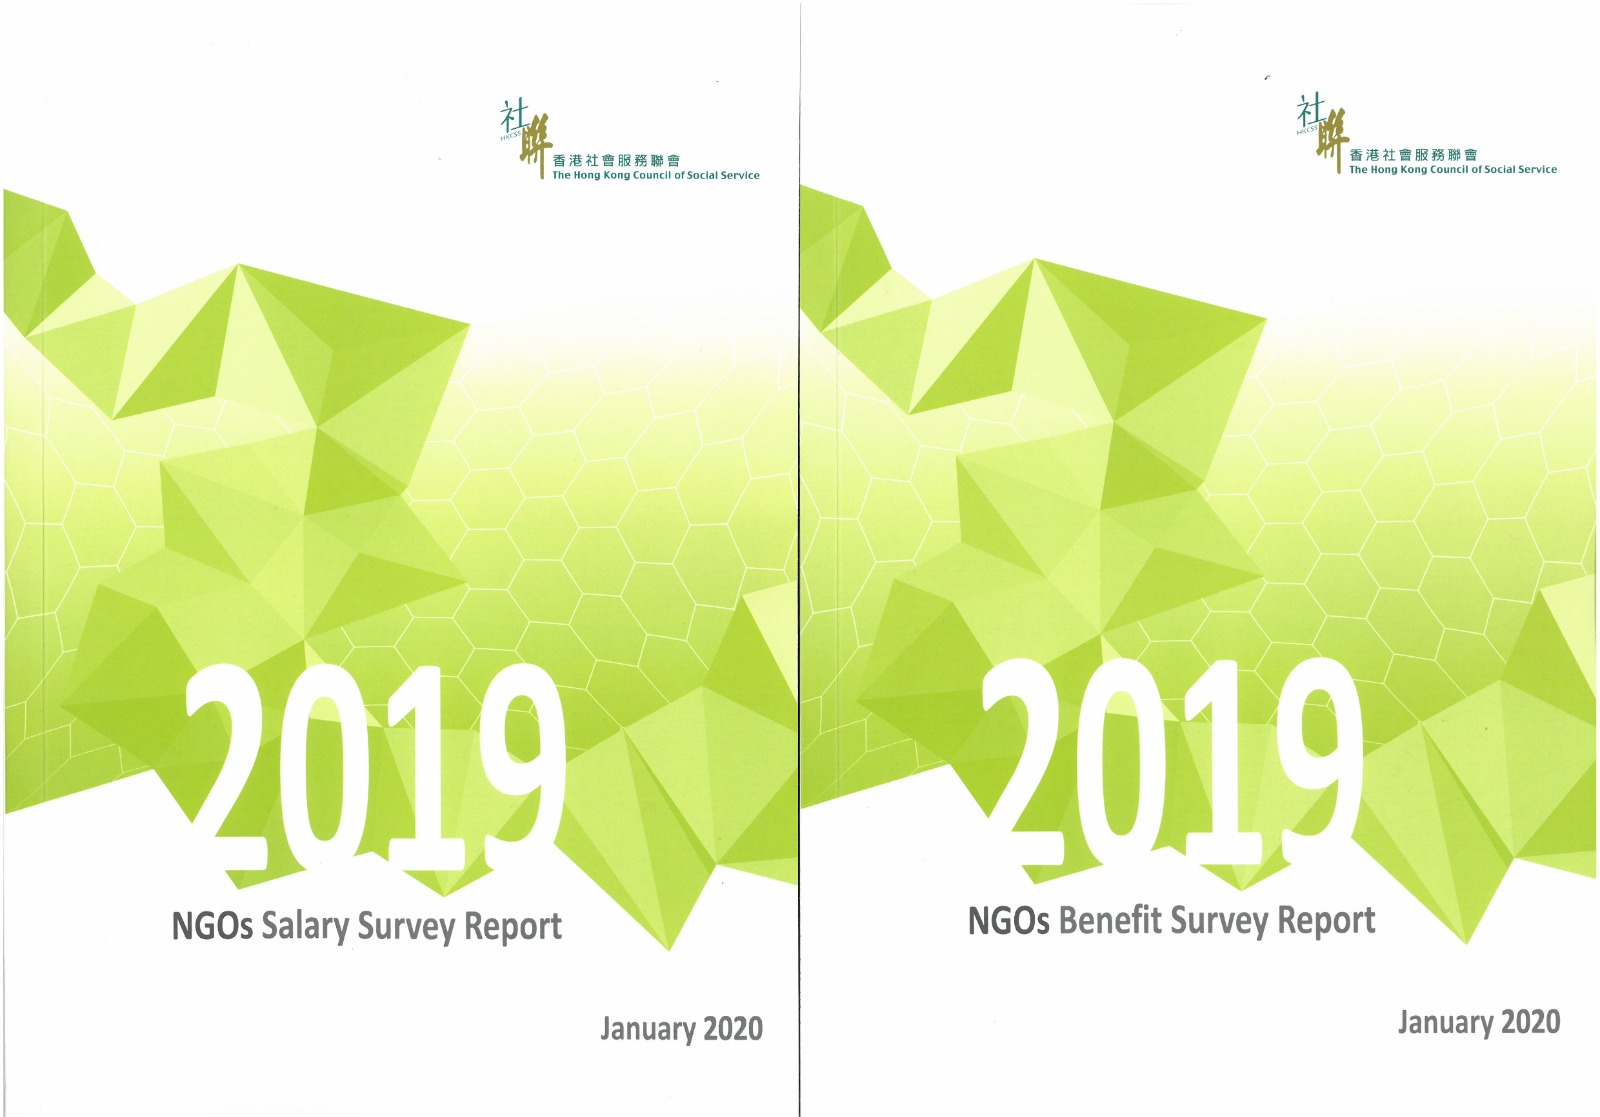 NGOs Salary Survey and NGOs Benefit Survey 2019